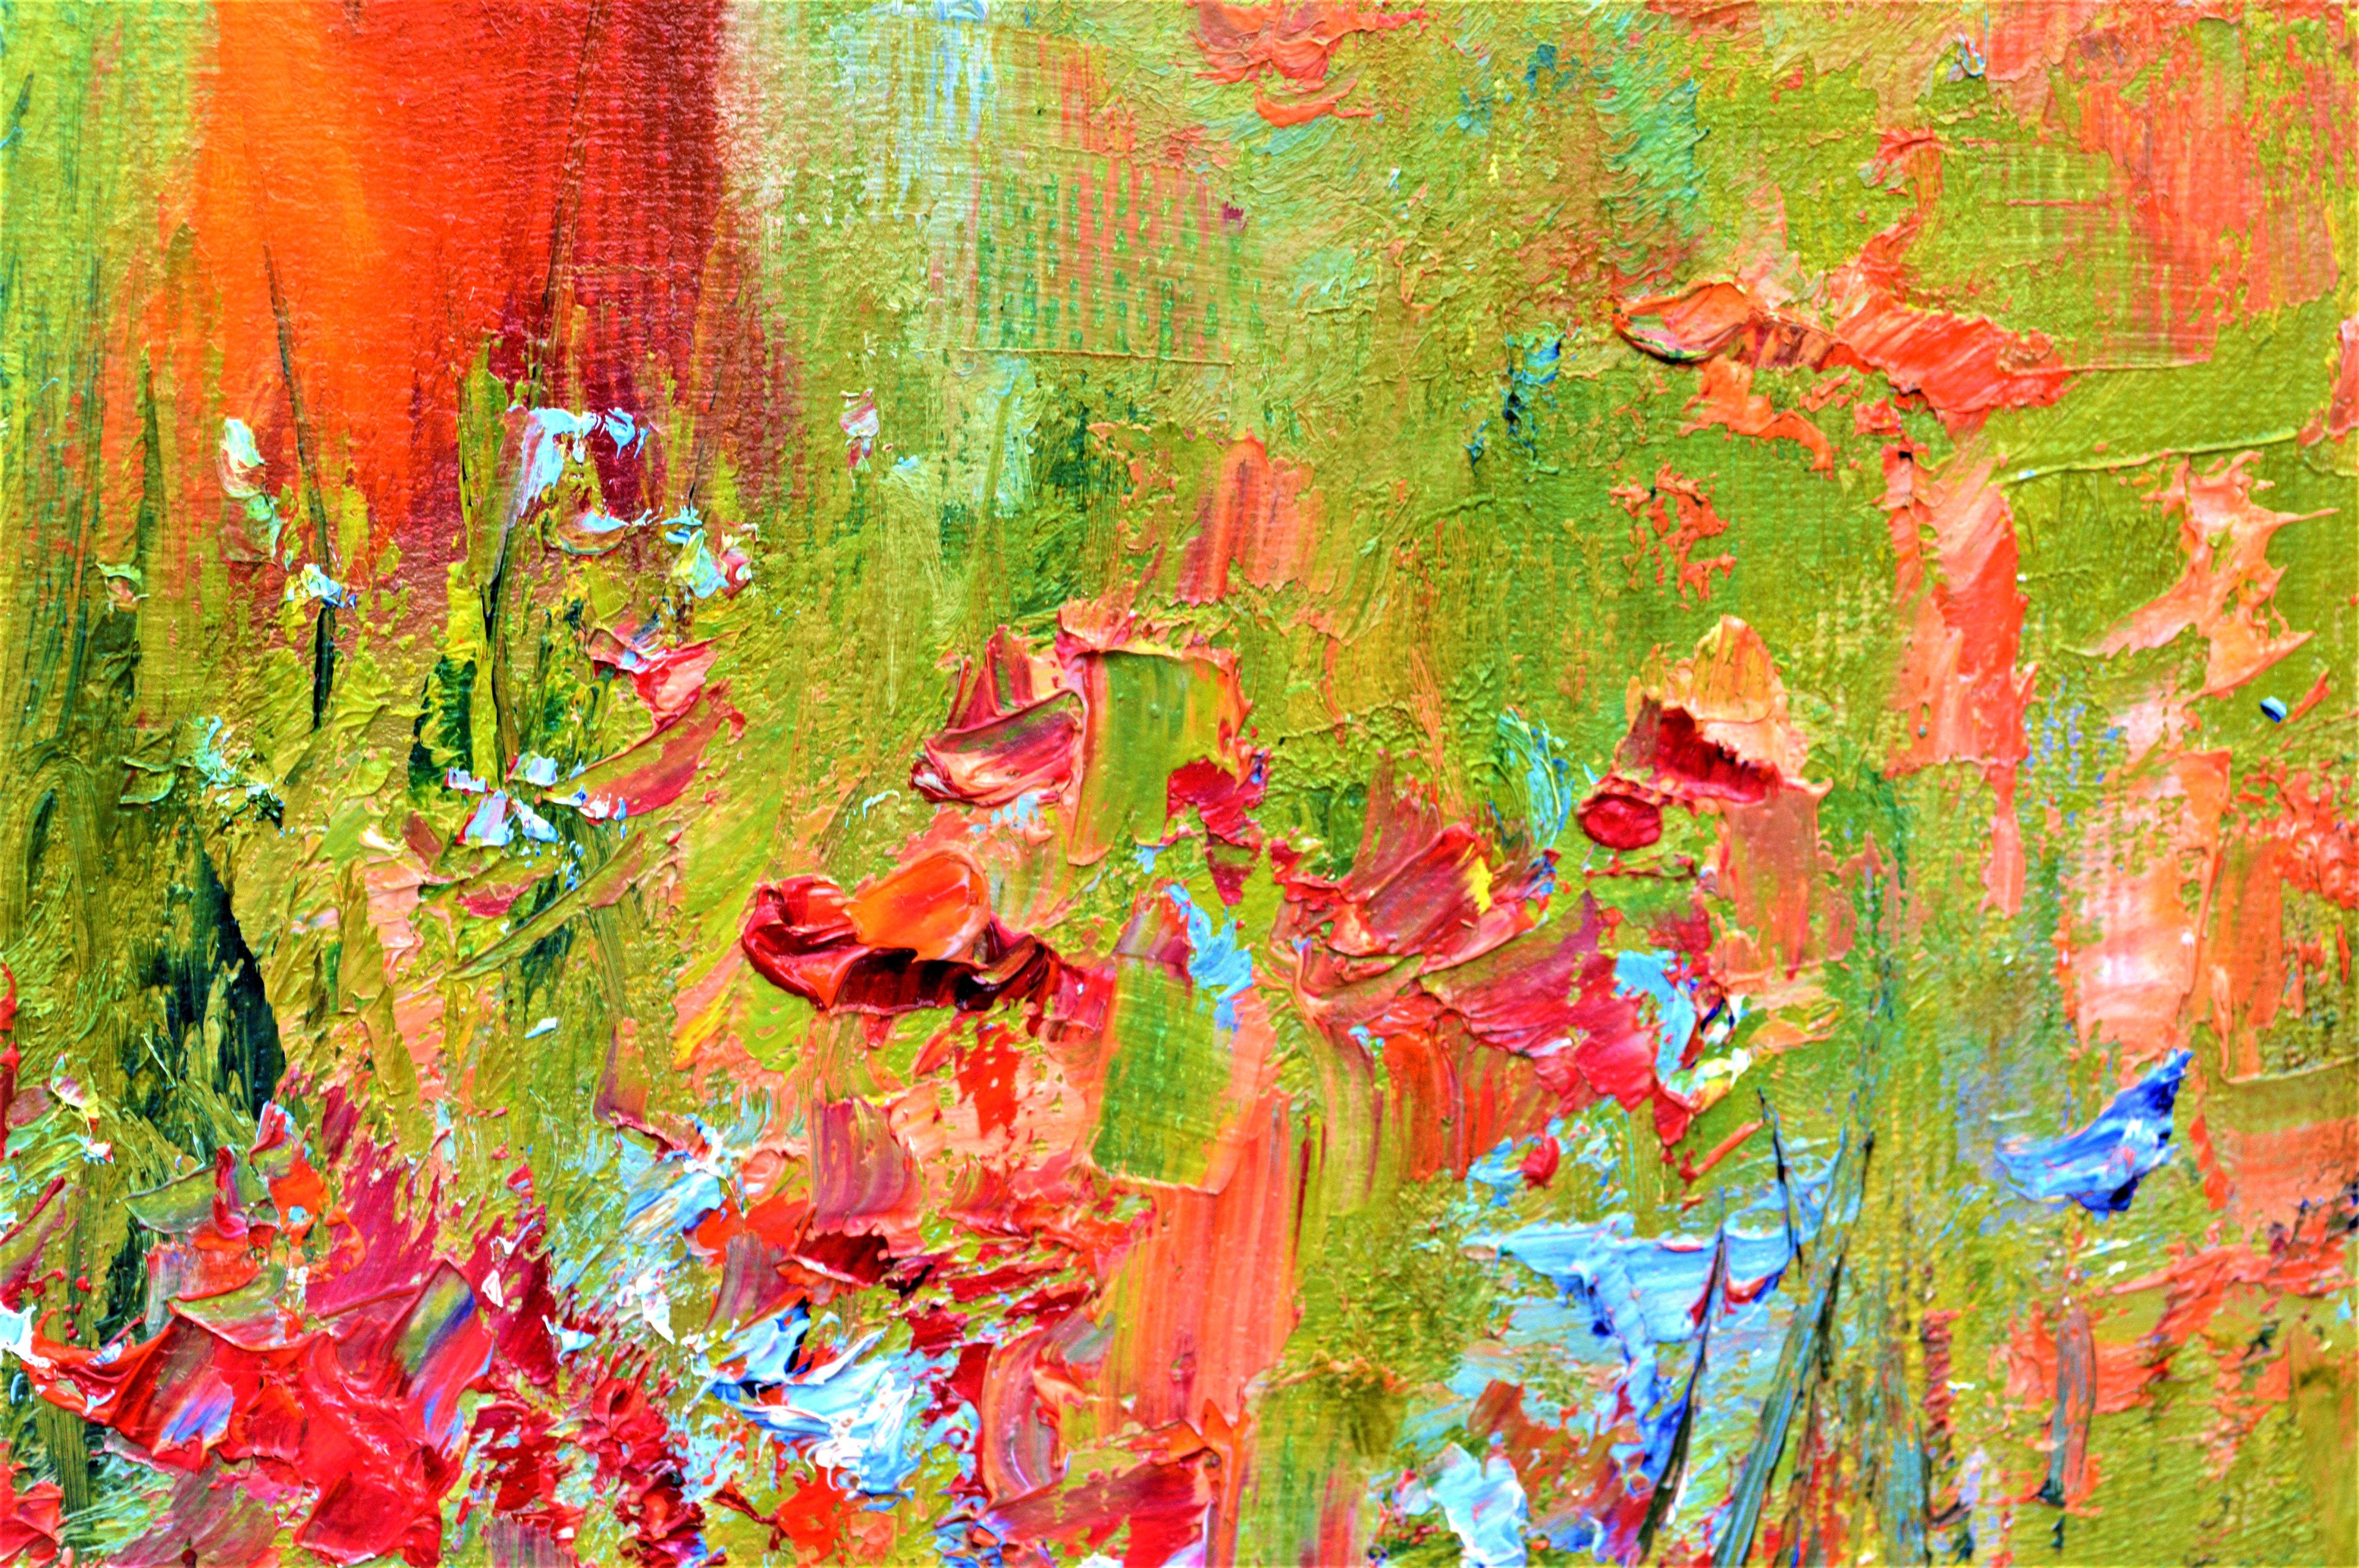 Dans cette huile sur toile expressive, les teintes vibrantes dansent avec la lumière et l'énergie, capturant l'essence d'une prairie gorgée de soleil. Le personnage embrasse la chaleur, entouré de la jubilation des fleurs d'été. Chaque coup de